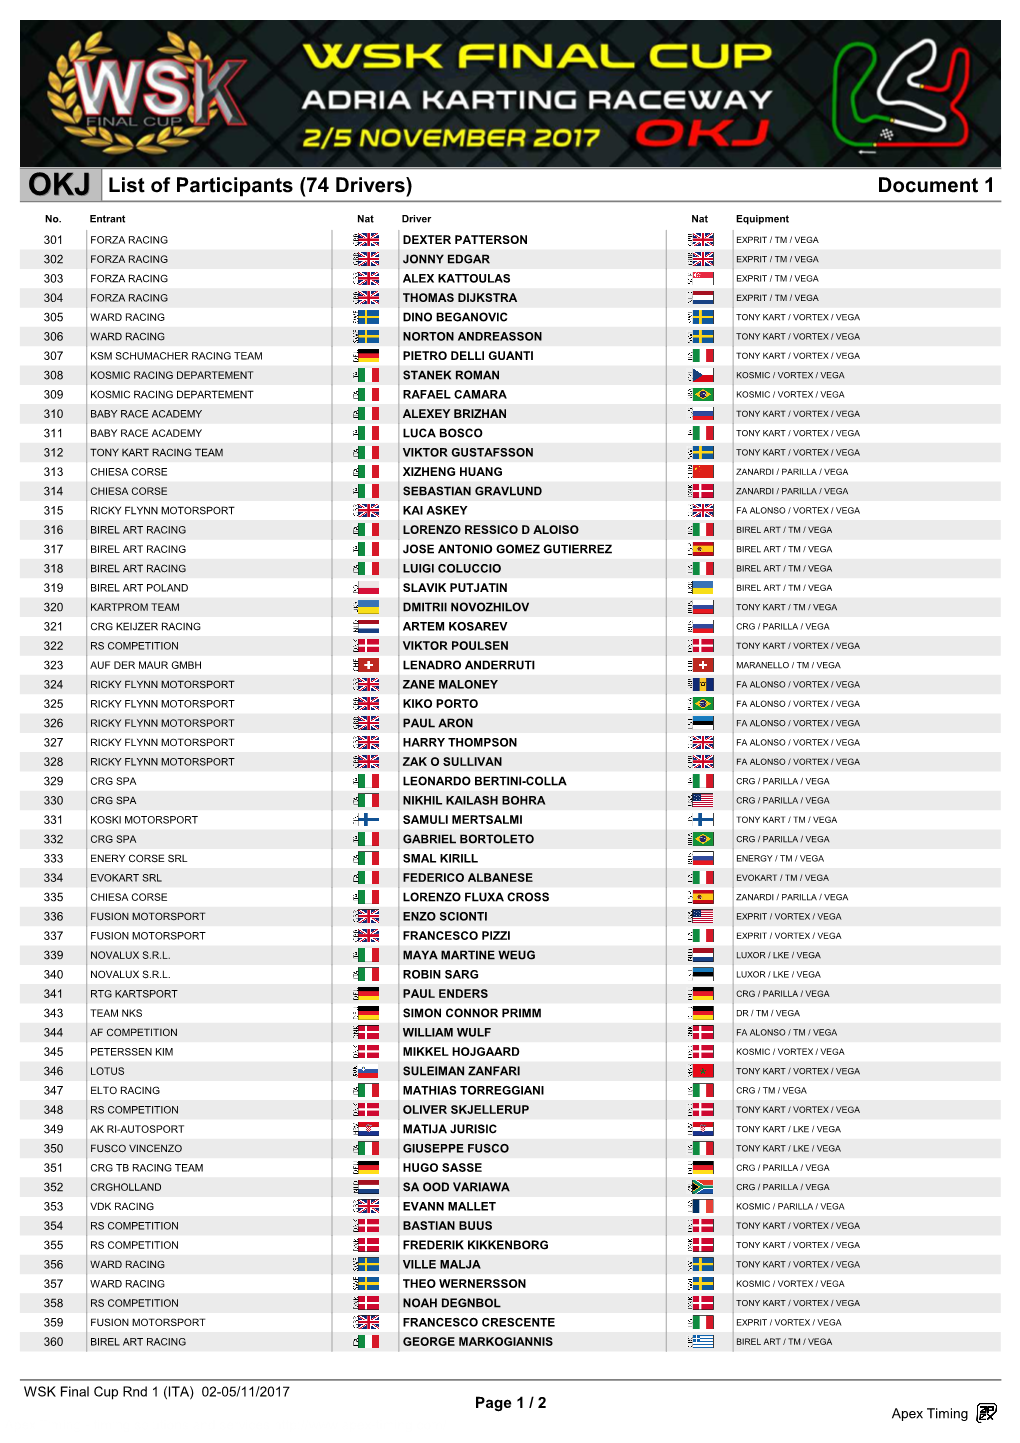 Document 1 List of Participants (74 Drivers)